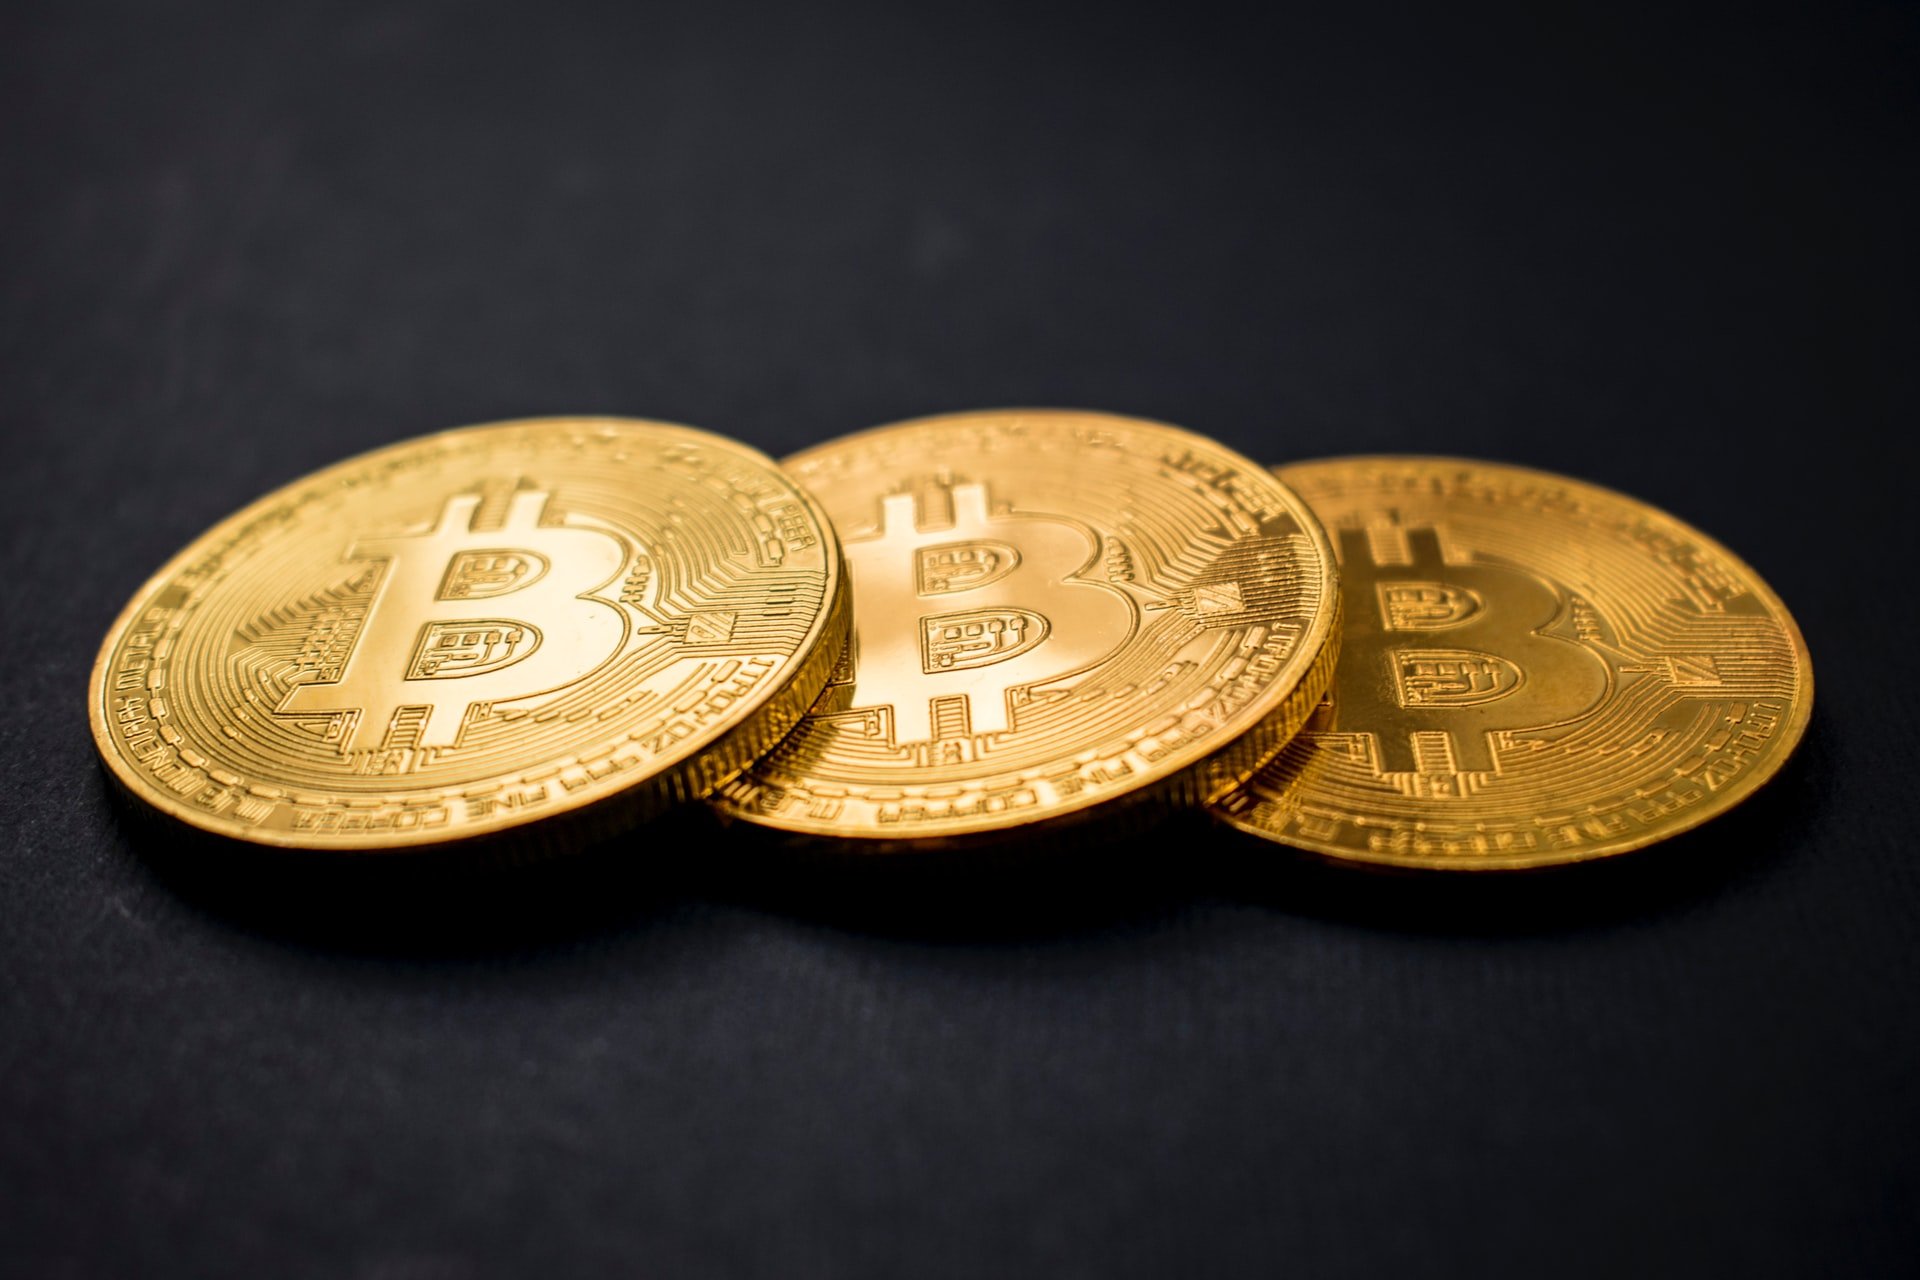 Sozinho, o Bitcoin contribui com grande parte da valorização do mercado.